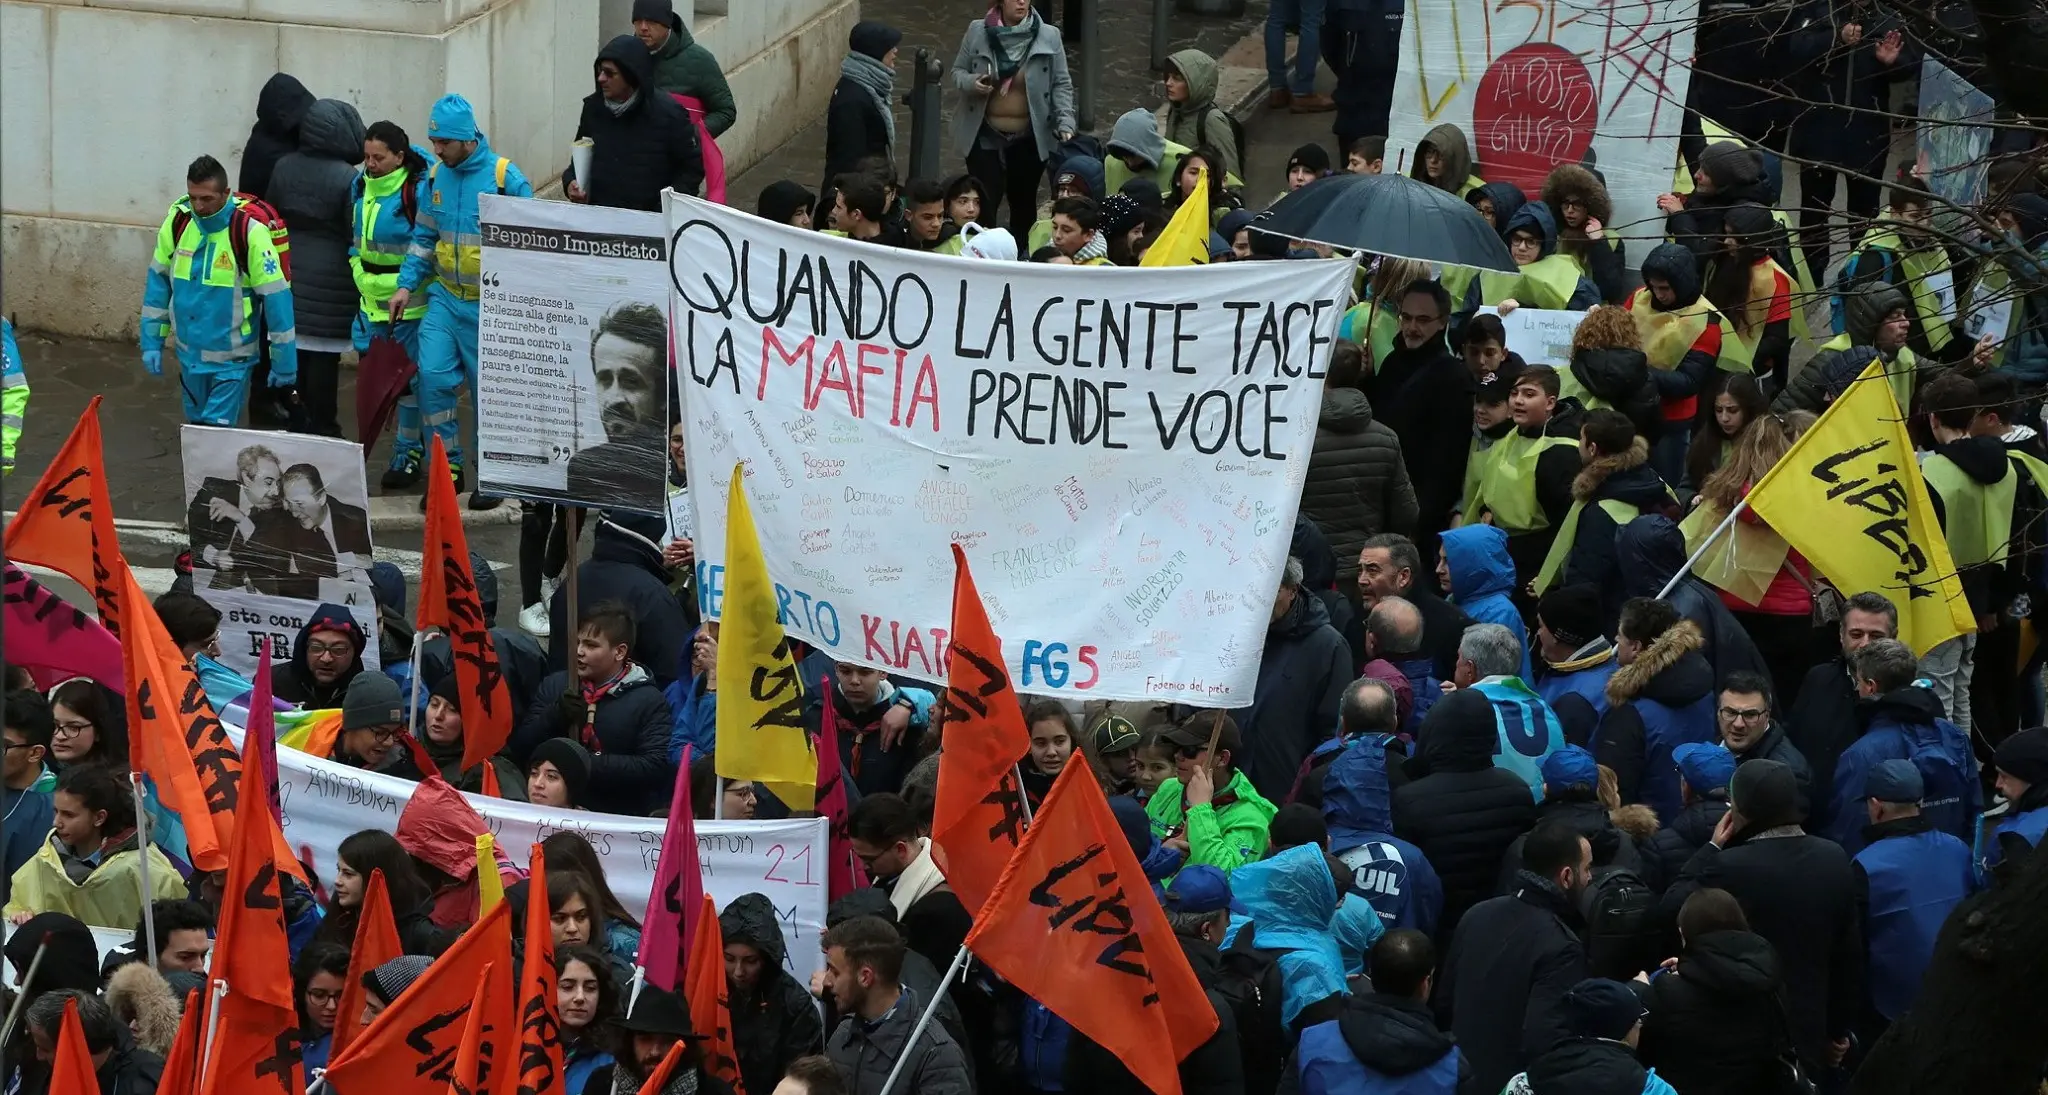 #FoggiaLiberaFoggia: in piazza contro la mafia e per la legalità